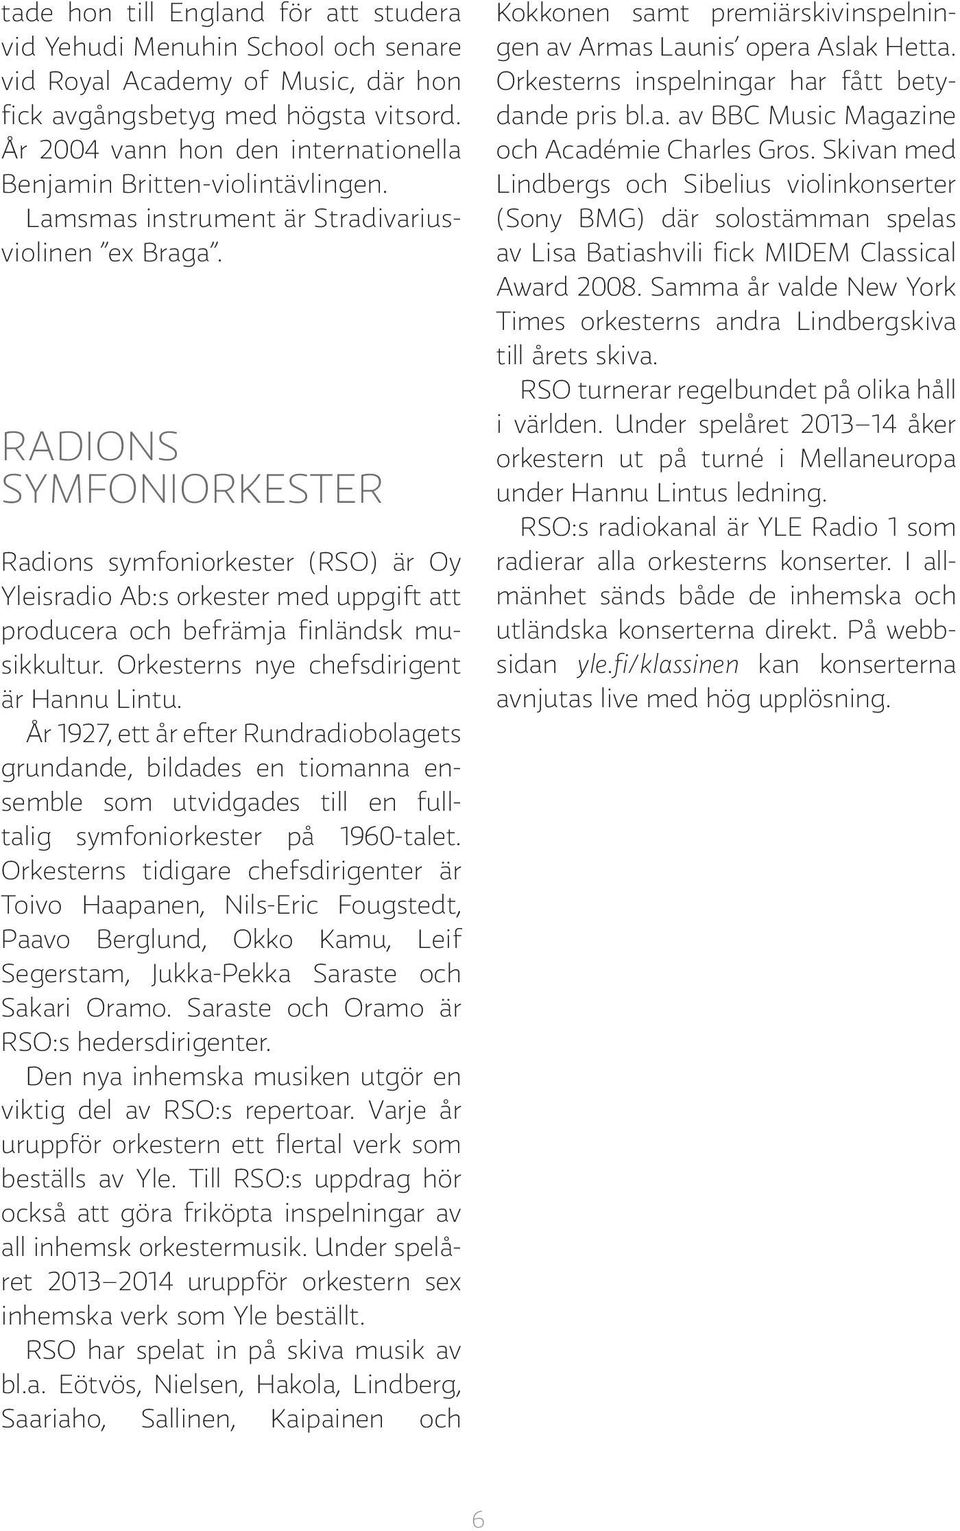 RADIONS SYMFONIORKESTER Radions symfoniorkester (RSO) är Oy Yleisradio Ab:s orkester med uppgift att producera och befrämja finländsk musikkultur. Orkesterns nye chefsdirigent är Hannu Lintu.